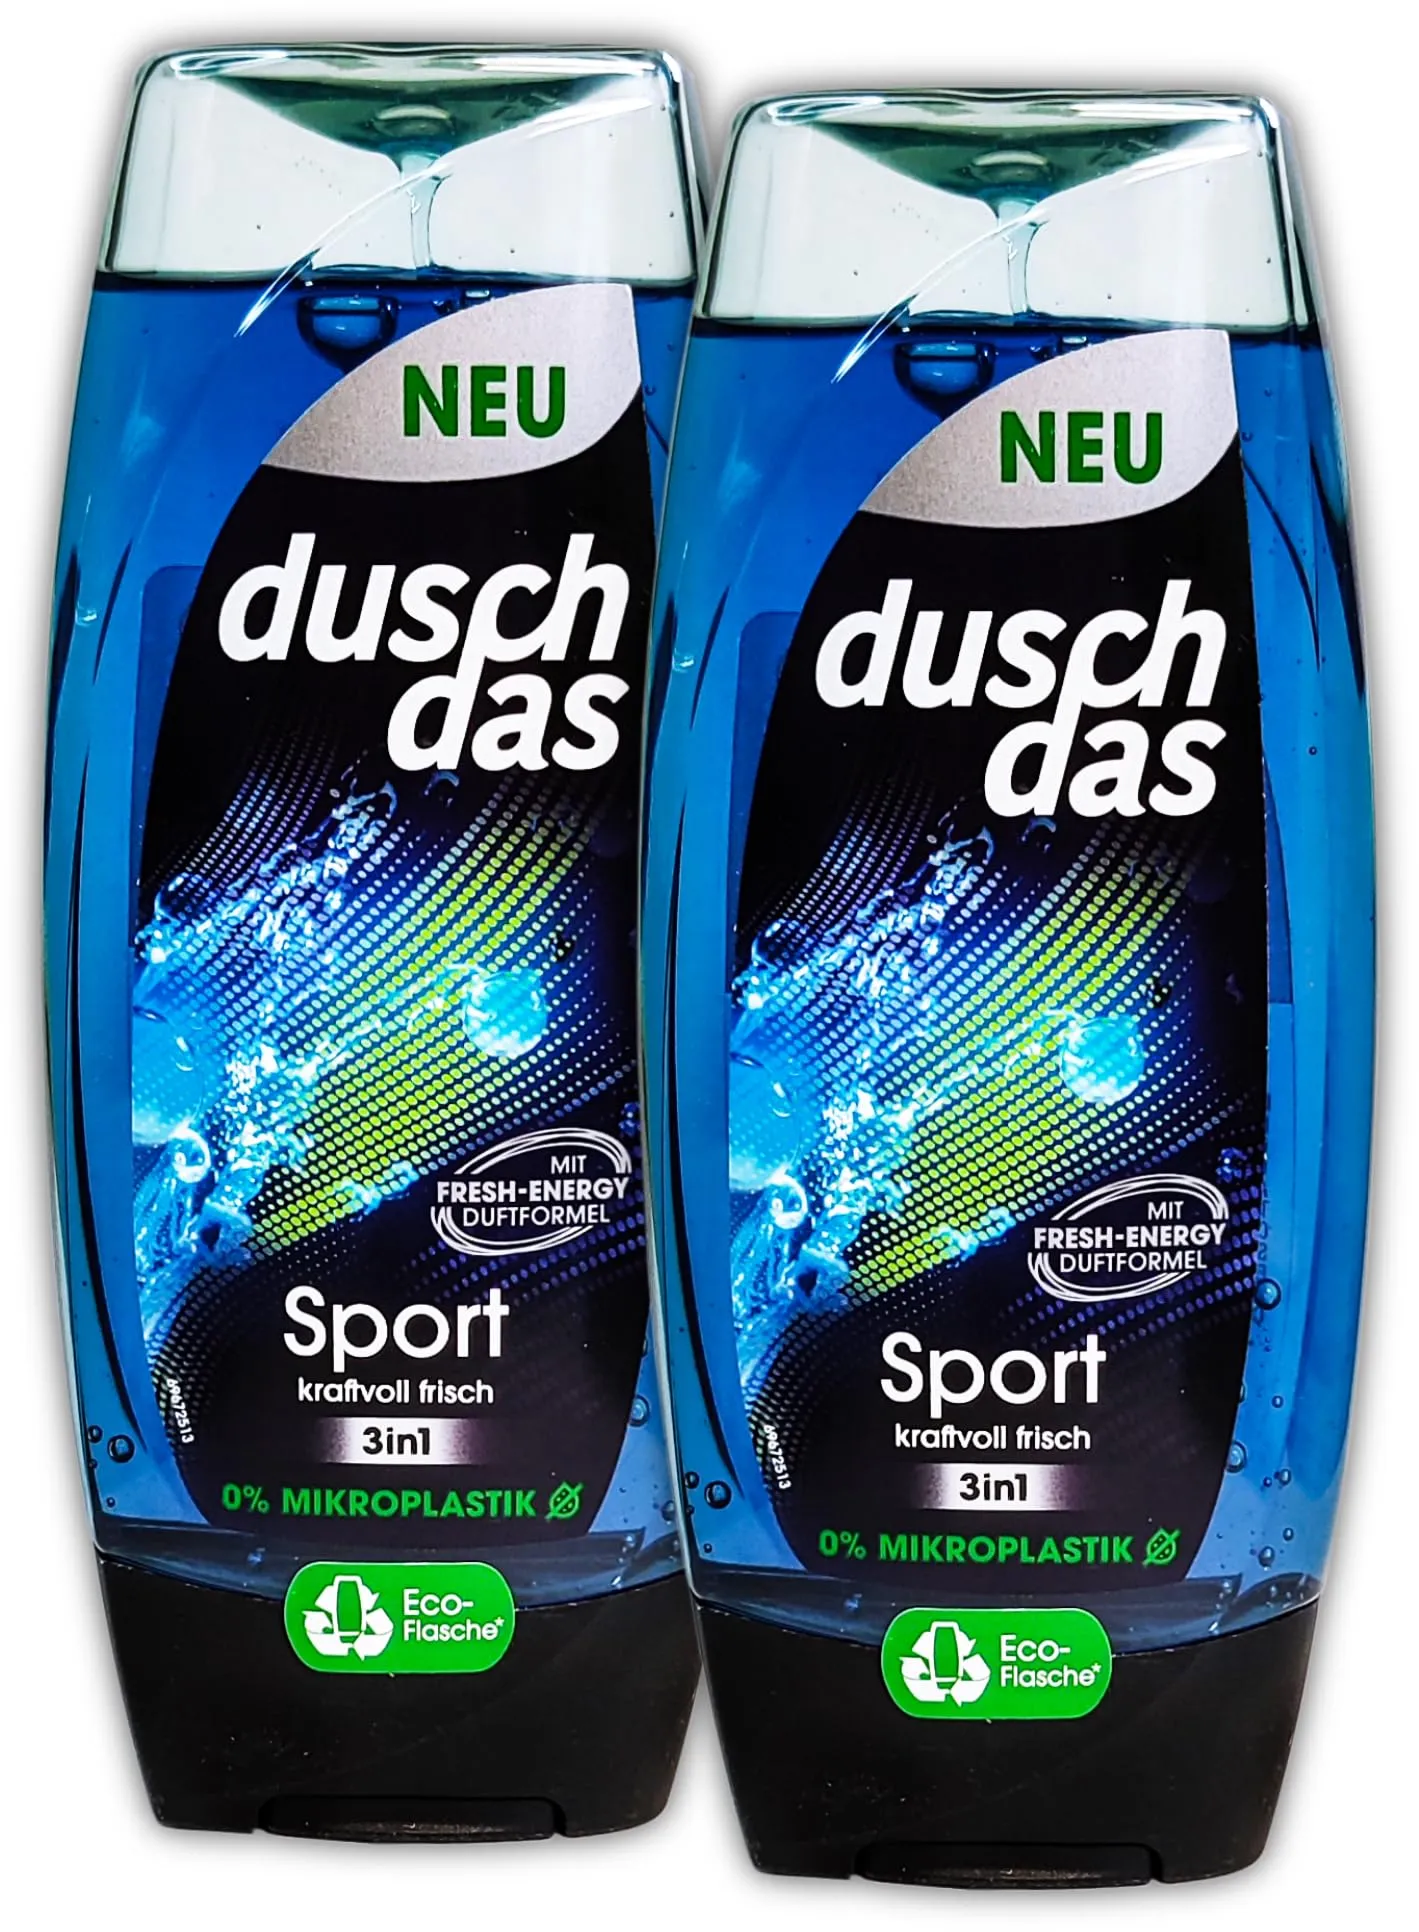 2 er Pack duschdas Duschgel Men Sport 3in1 2 x 225 ml Shower Gel